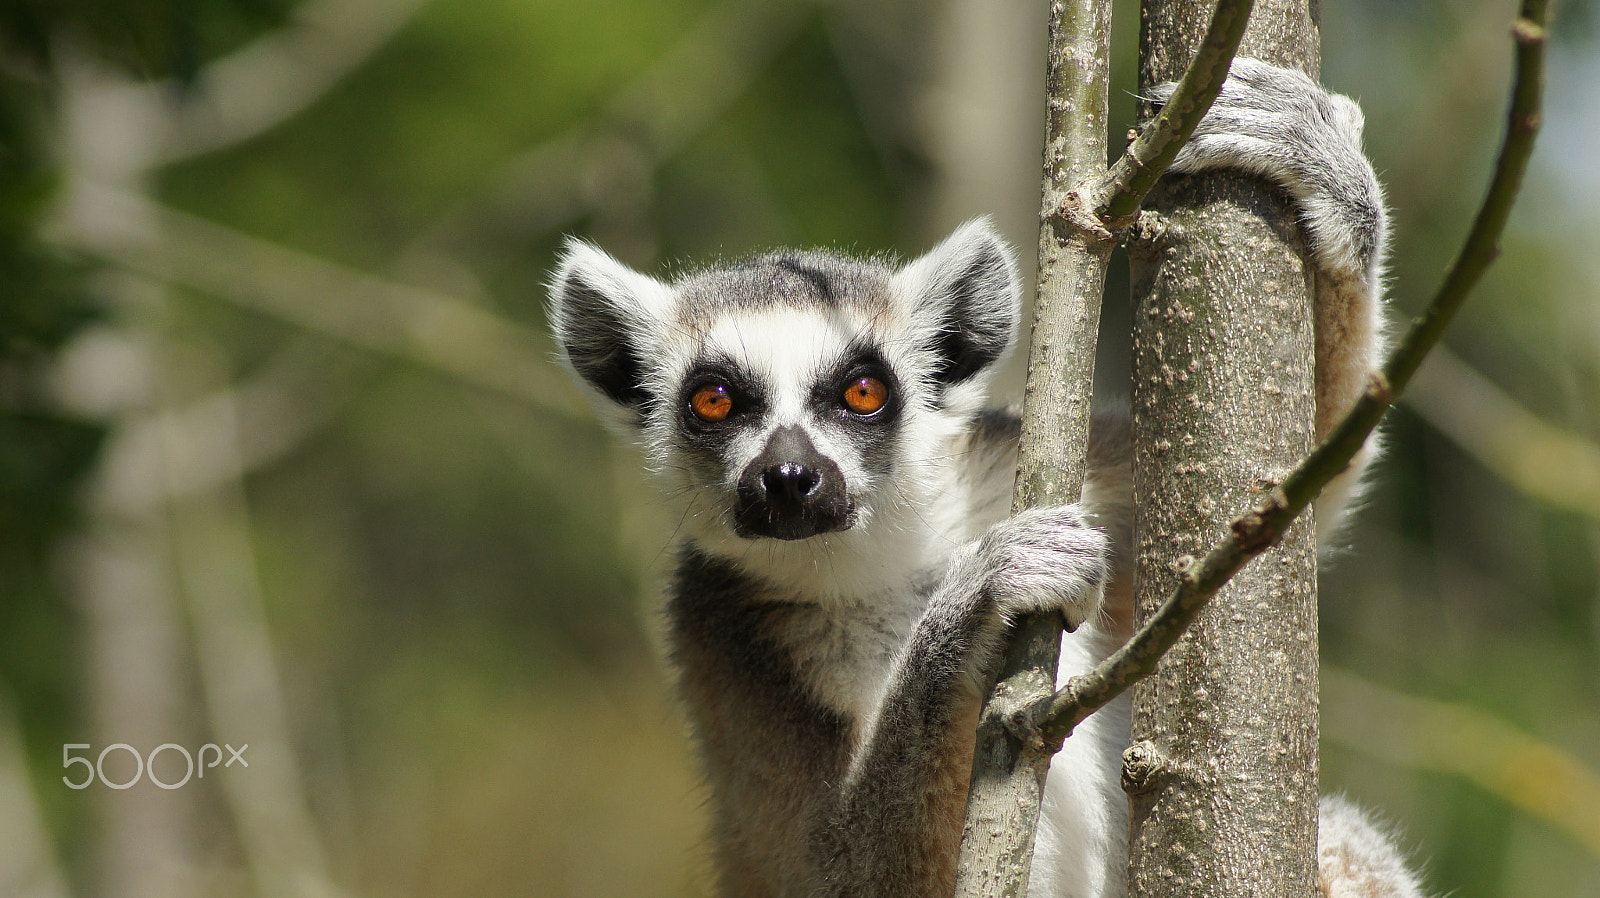 Tamron AF 70-300mm F4-5.6 Di LD Macro sample photo. Curious lemur photography